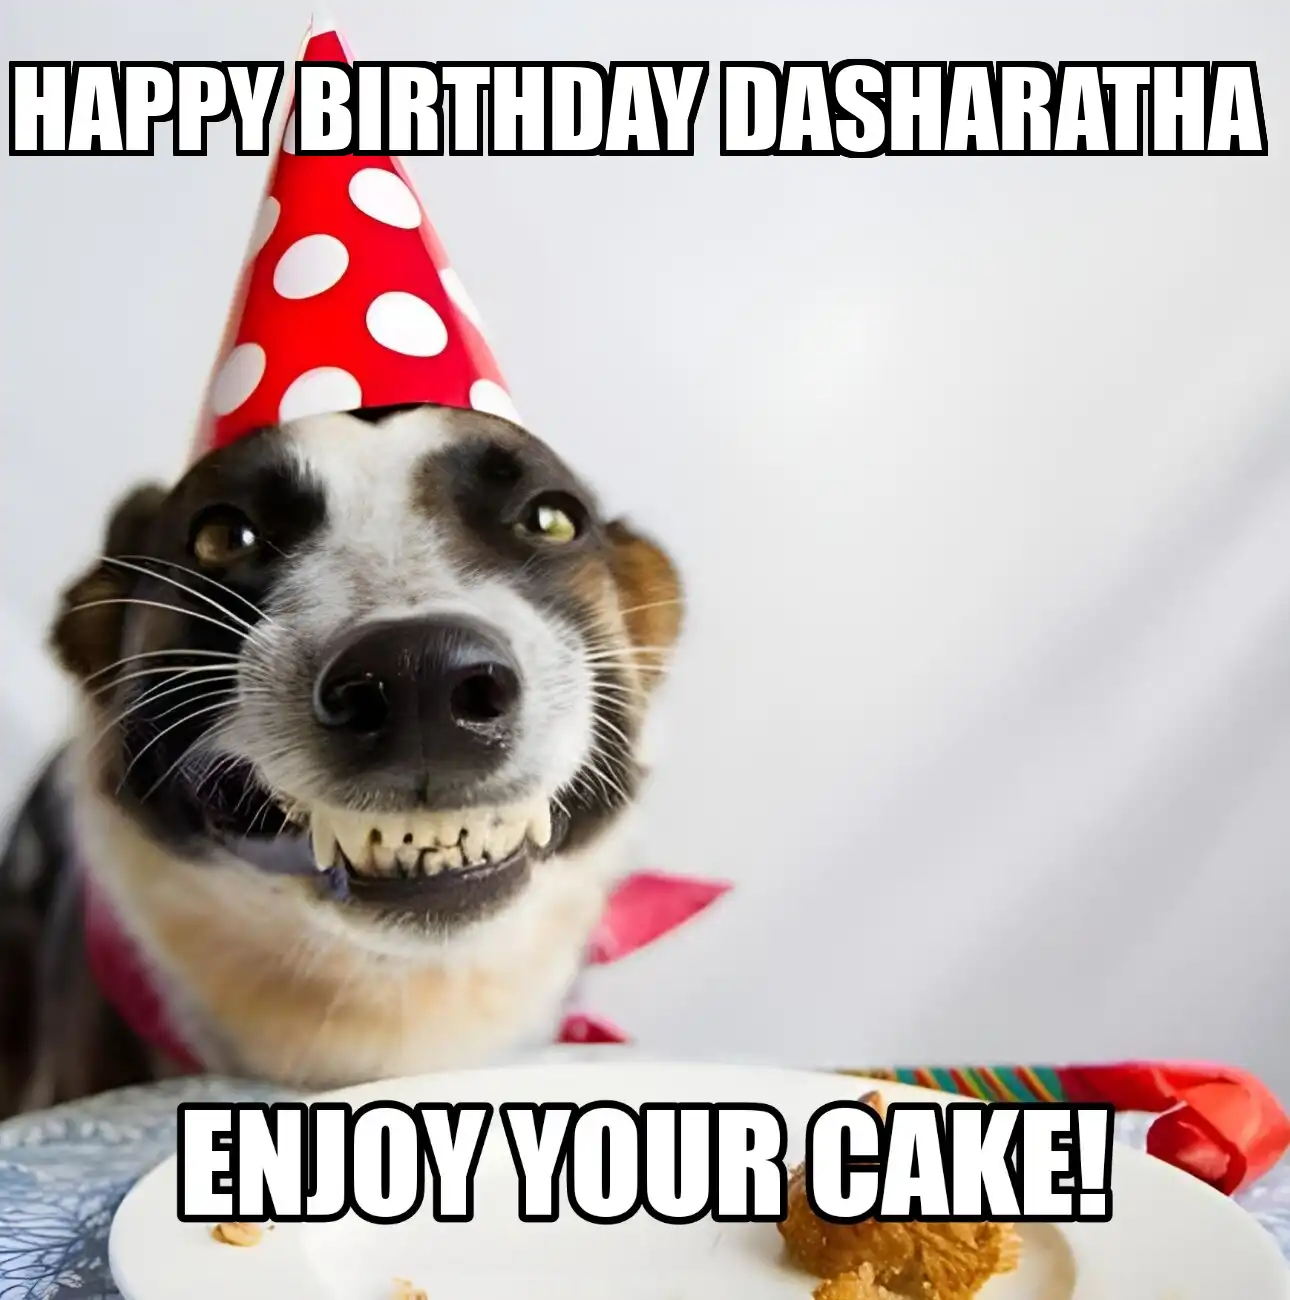 Happy Birthday Dasharatha Enjoy Your Cake Dog Meme